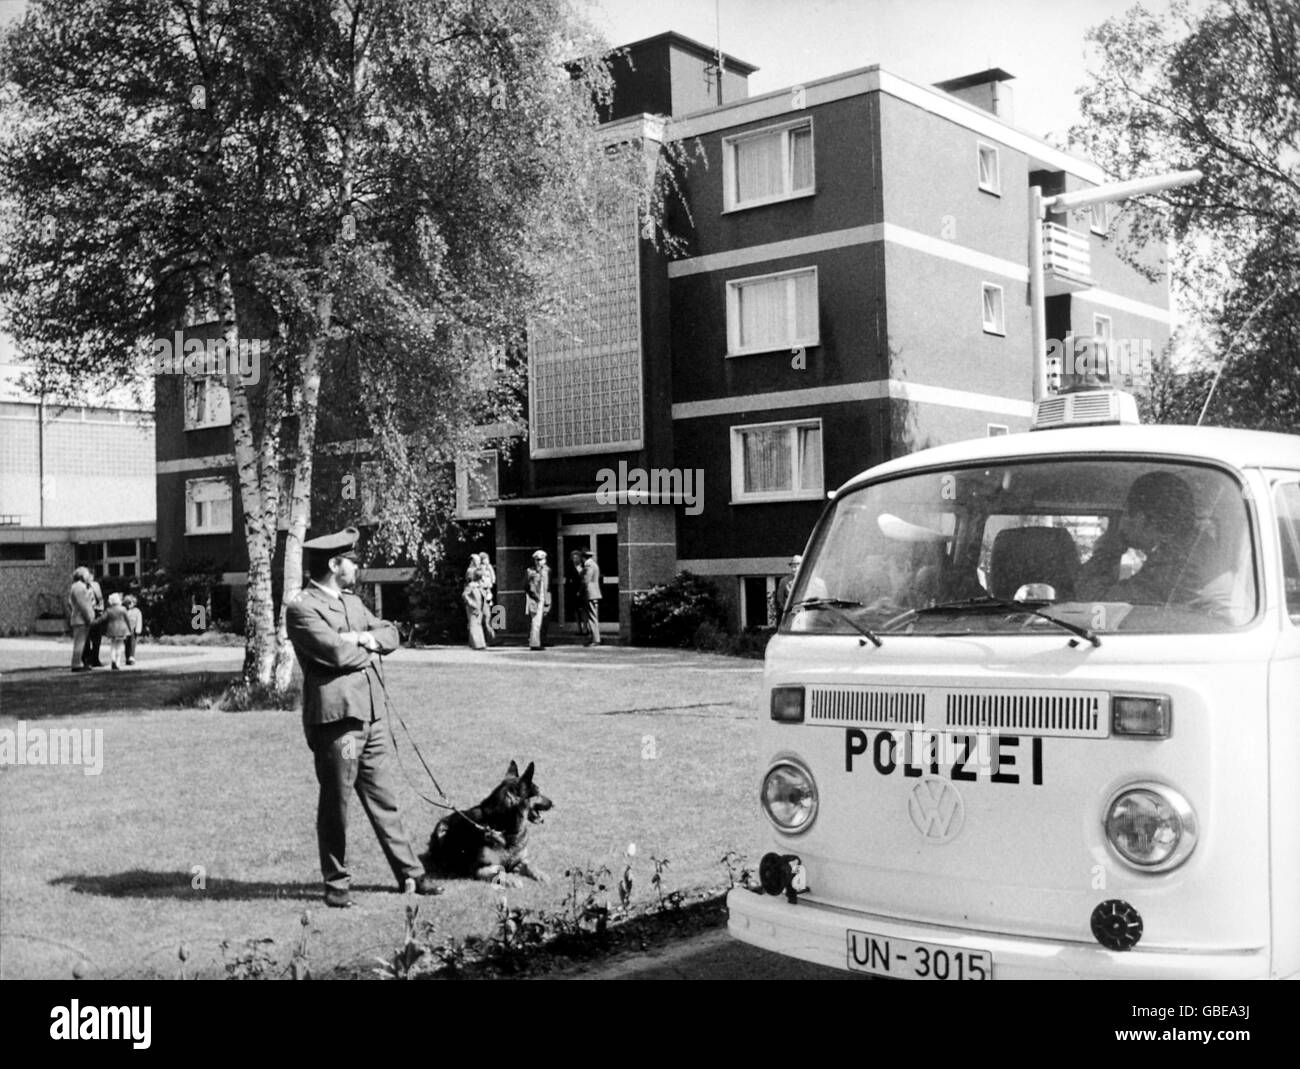 Calcio - Coppa del mondo Germania occidentale 1974. I poliziotti tedeschi sorvegliano il quartier generale della squadra della Germania occidentale prima dell'arrivo della squadra Foto Stock